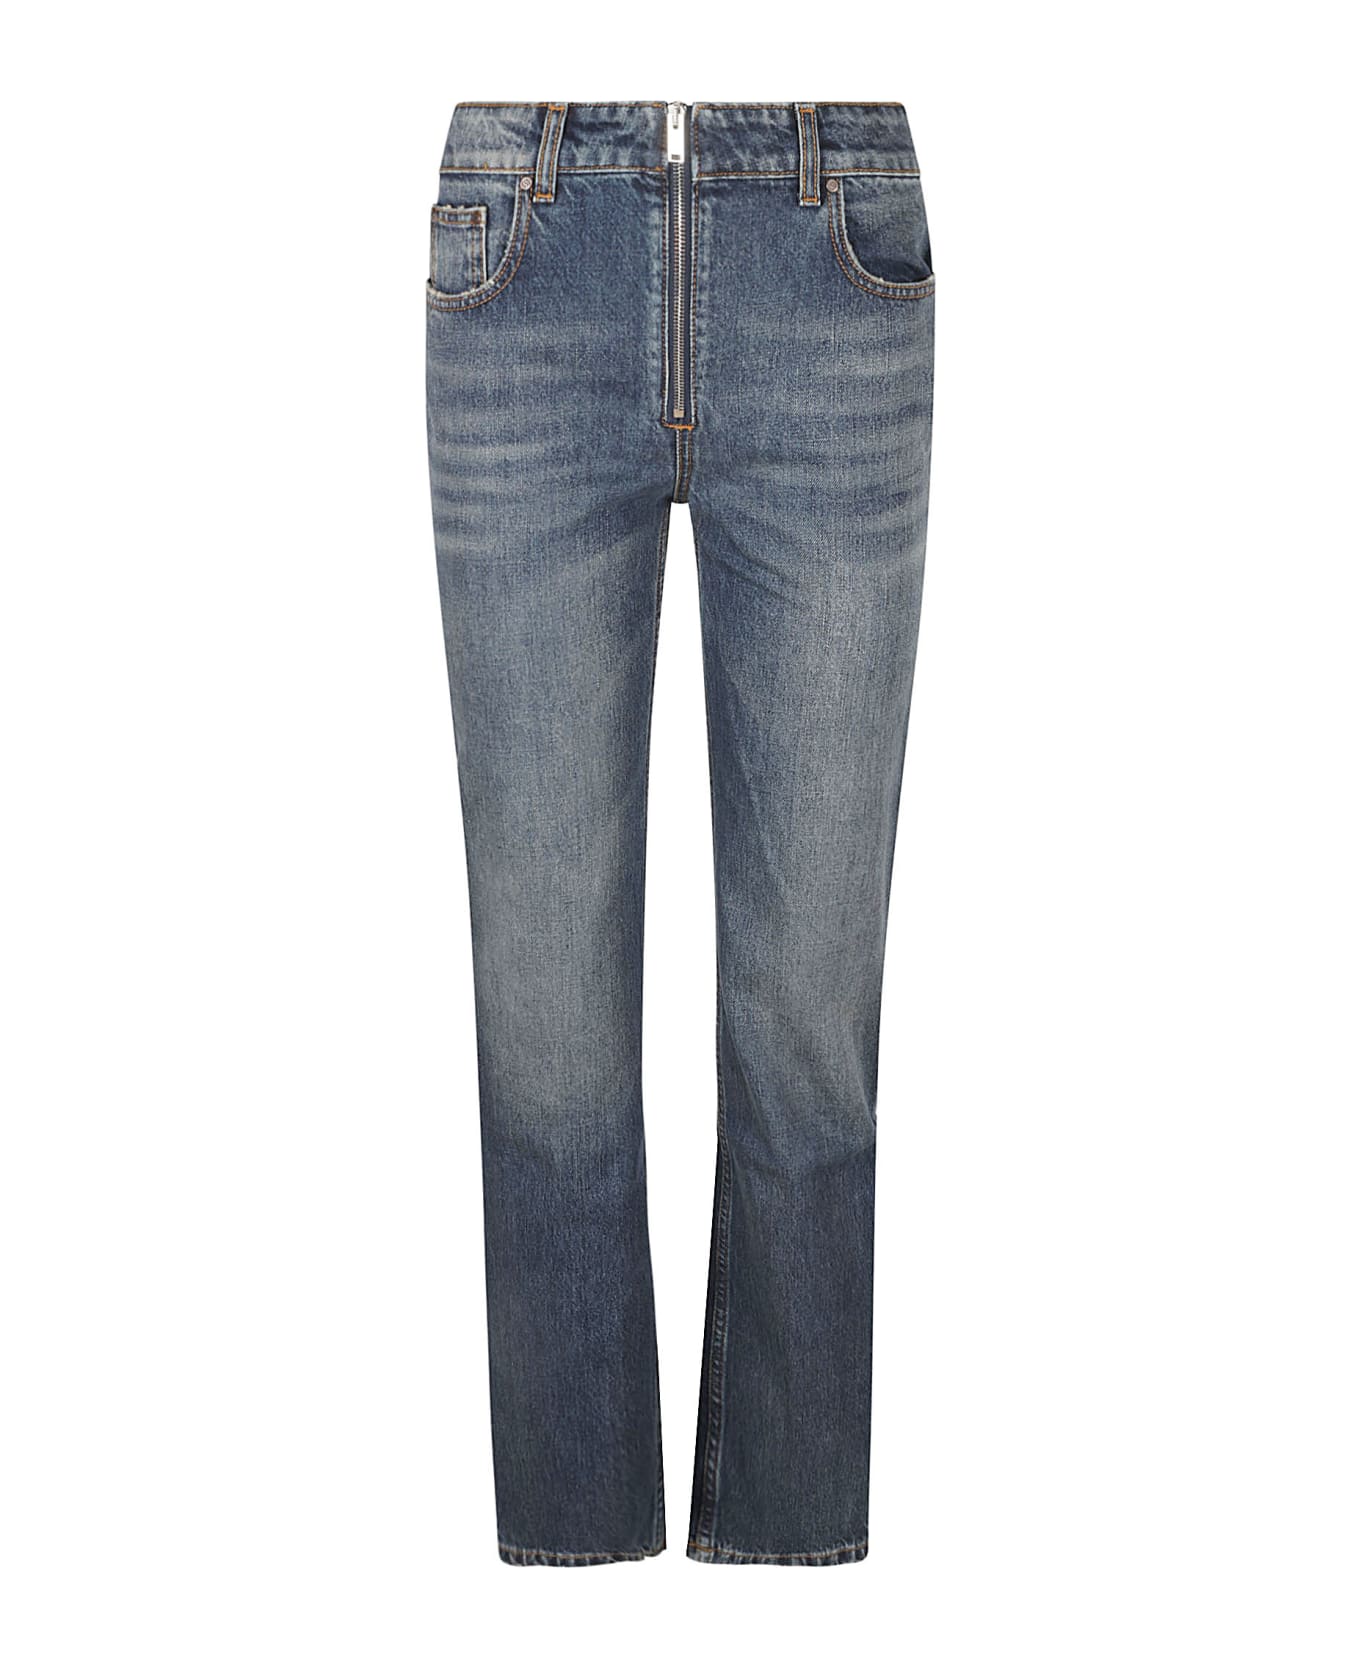 Stella McCartney Denim Zip Straight Jeans - VINTAGE BLUE